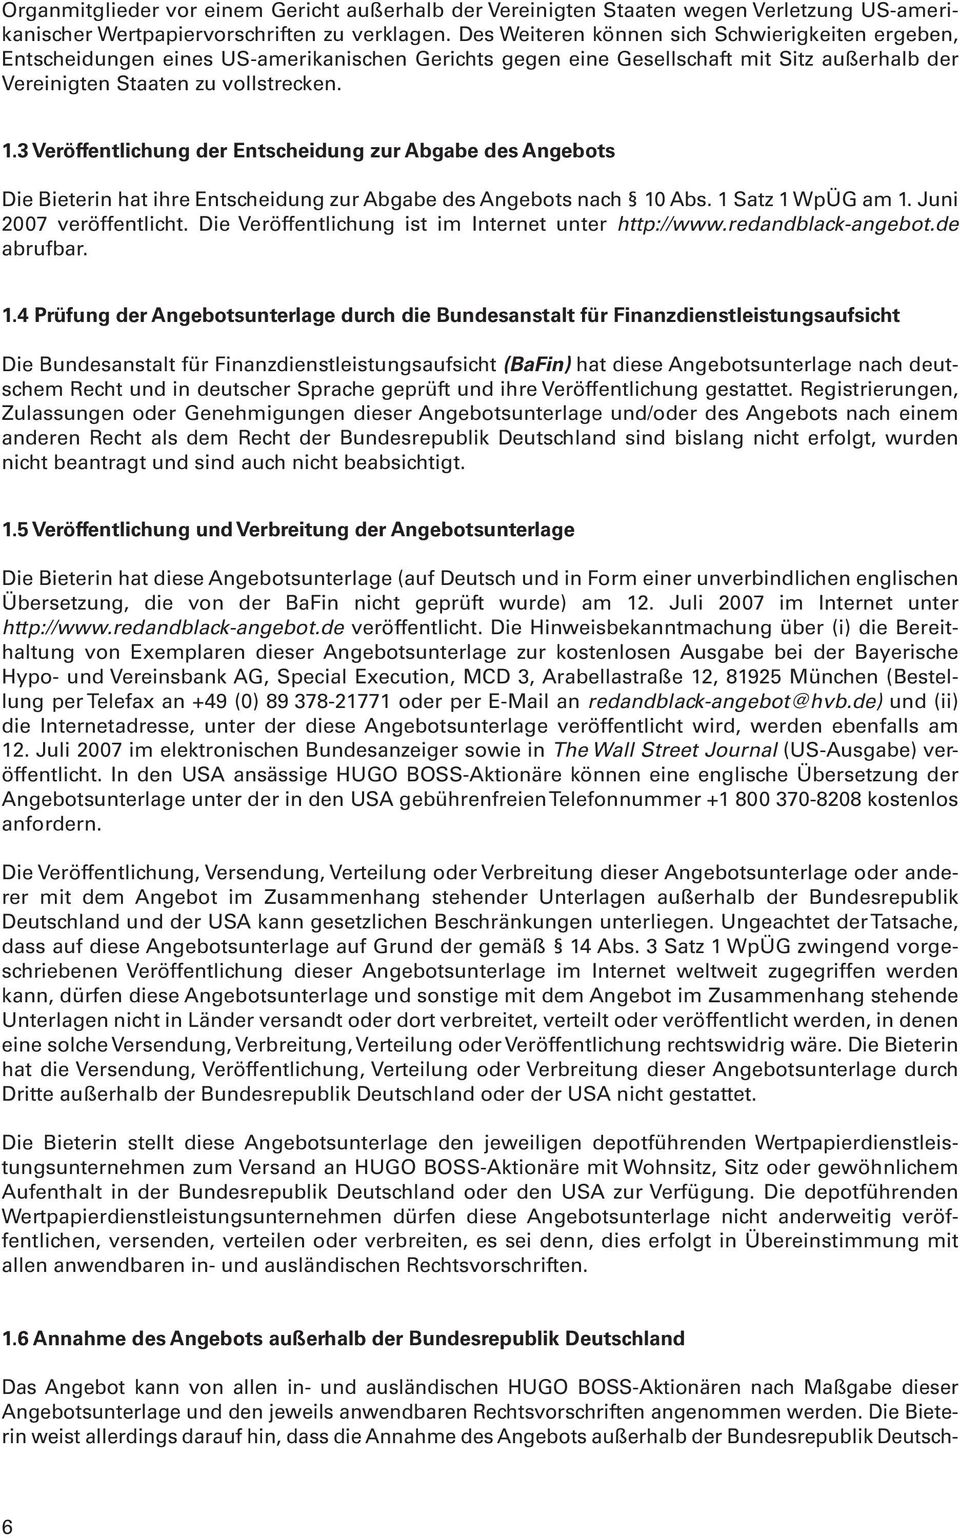 3 Veröffentlichung der Entscheidung zur Abgabe des Angebots Die Bieterin hat ihre Entscheidung zur Abgabe des Angebots nach 10 Abs. 1 Satz 1 WpÜG am 1. Juni 2007 veröffentlicht.